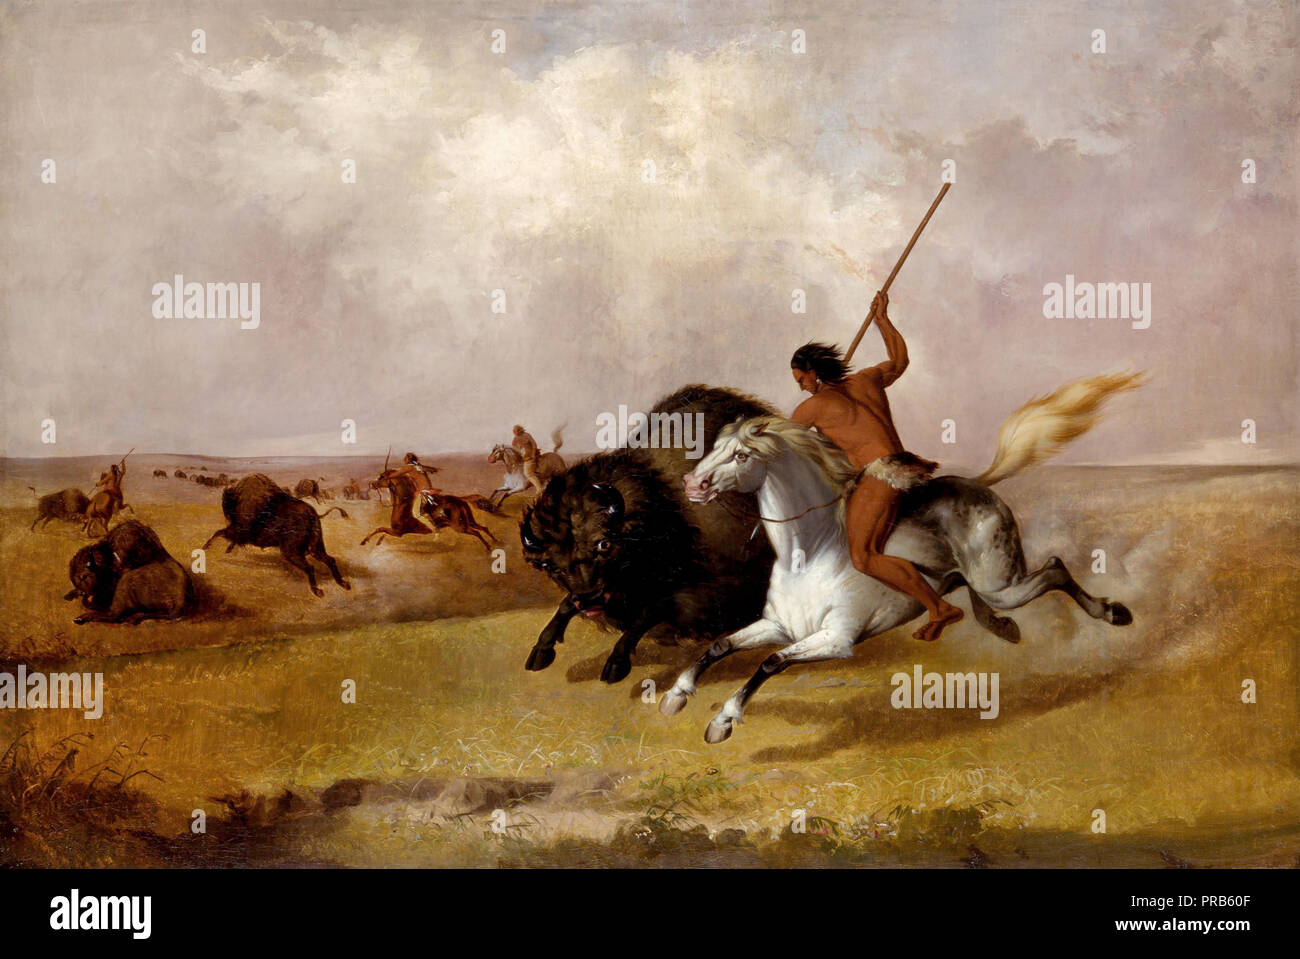 John Mix Stanley, Buffalo Hunt en el suroeste de la Llanura 1845 Óleo sobre lienzo, el Smithsonian American Art Museum, Washington, D.C., Estados Unidos. Foto de stock